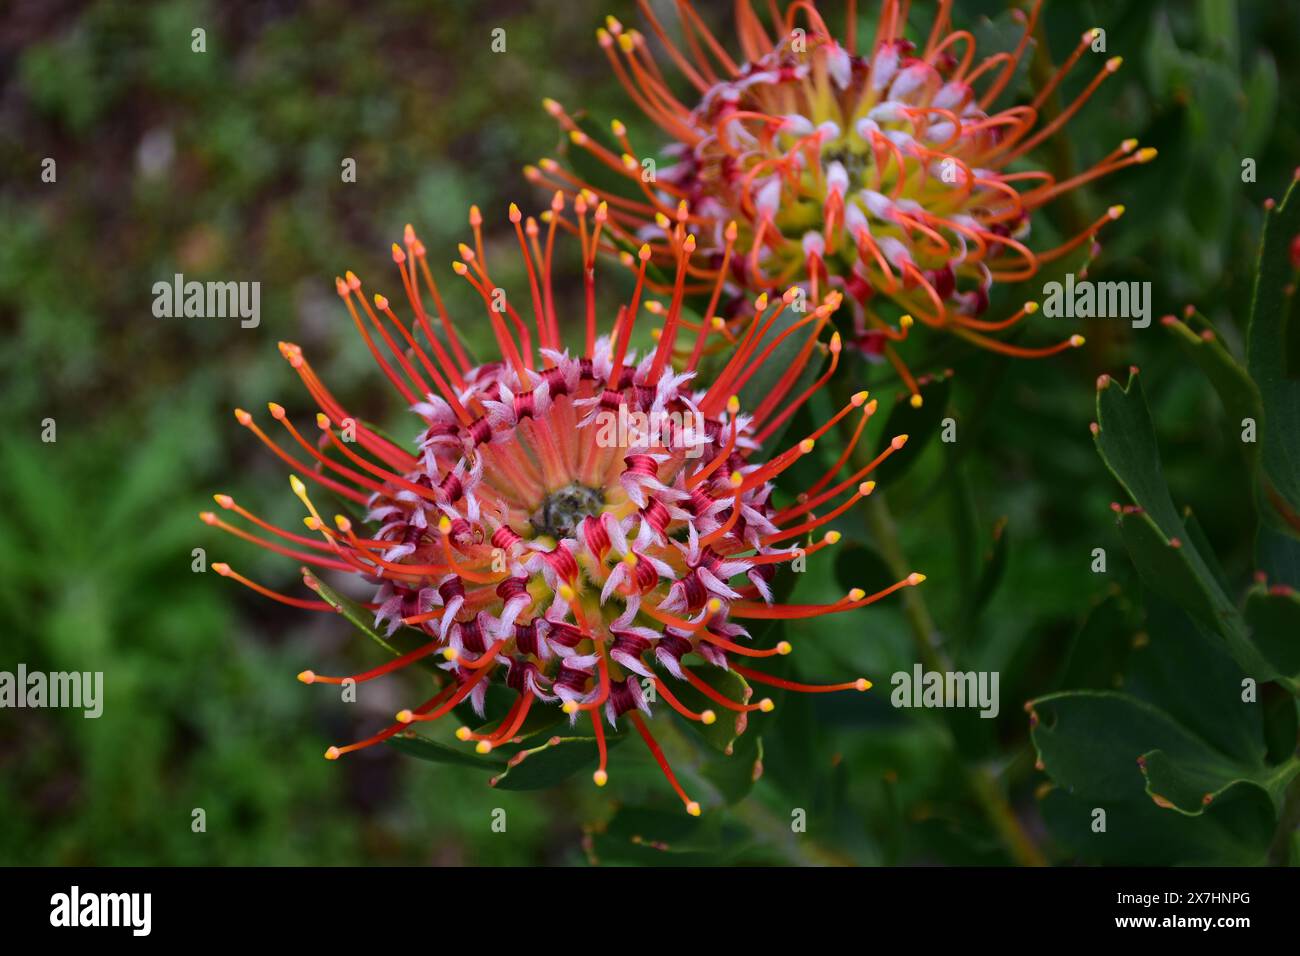 Pincushion Protea, Leucospermum, Kirstenbosch National Botanical Garden, Newlands, near Cape Town, South Africa Stock Photo